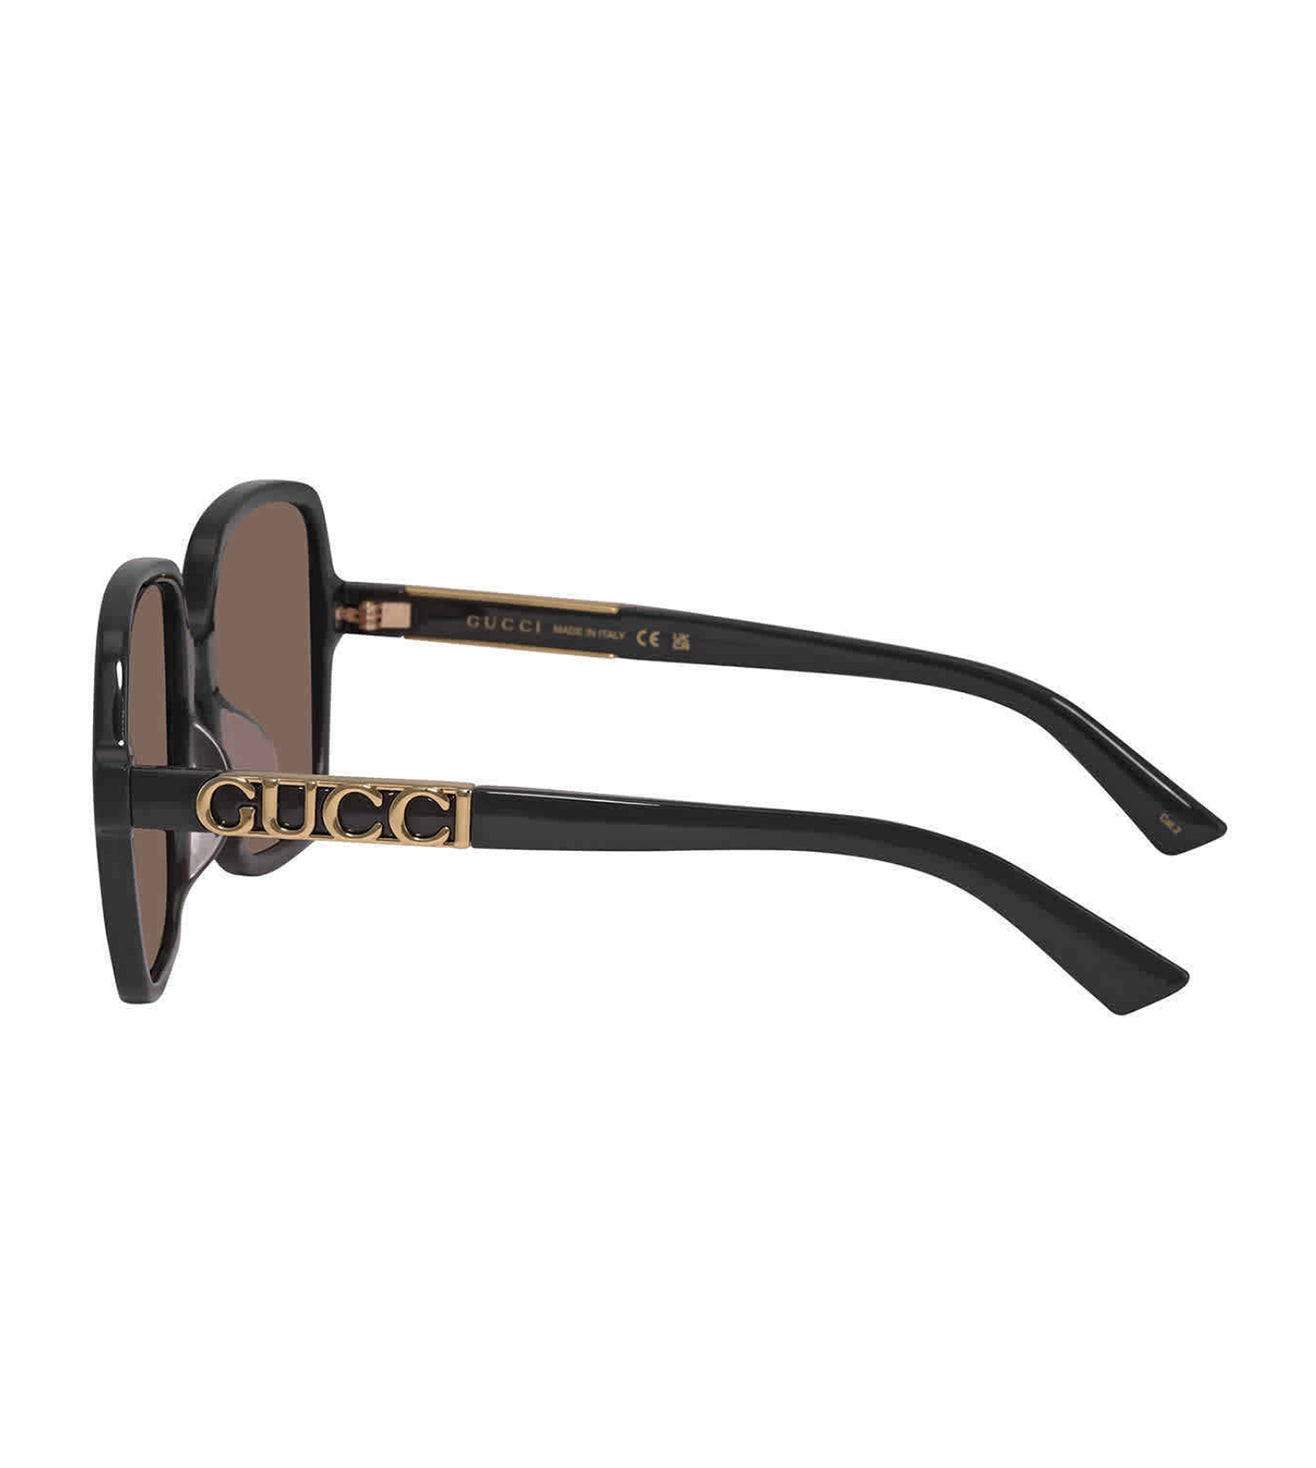 Gucci Women's Light Brown Square Sunglasses